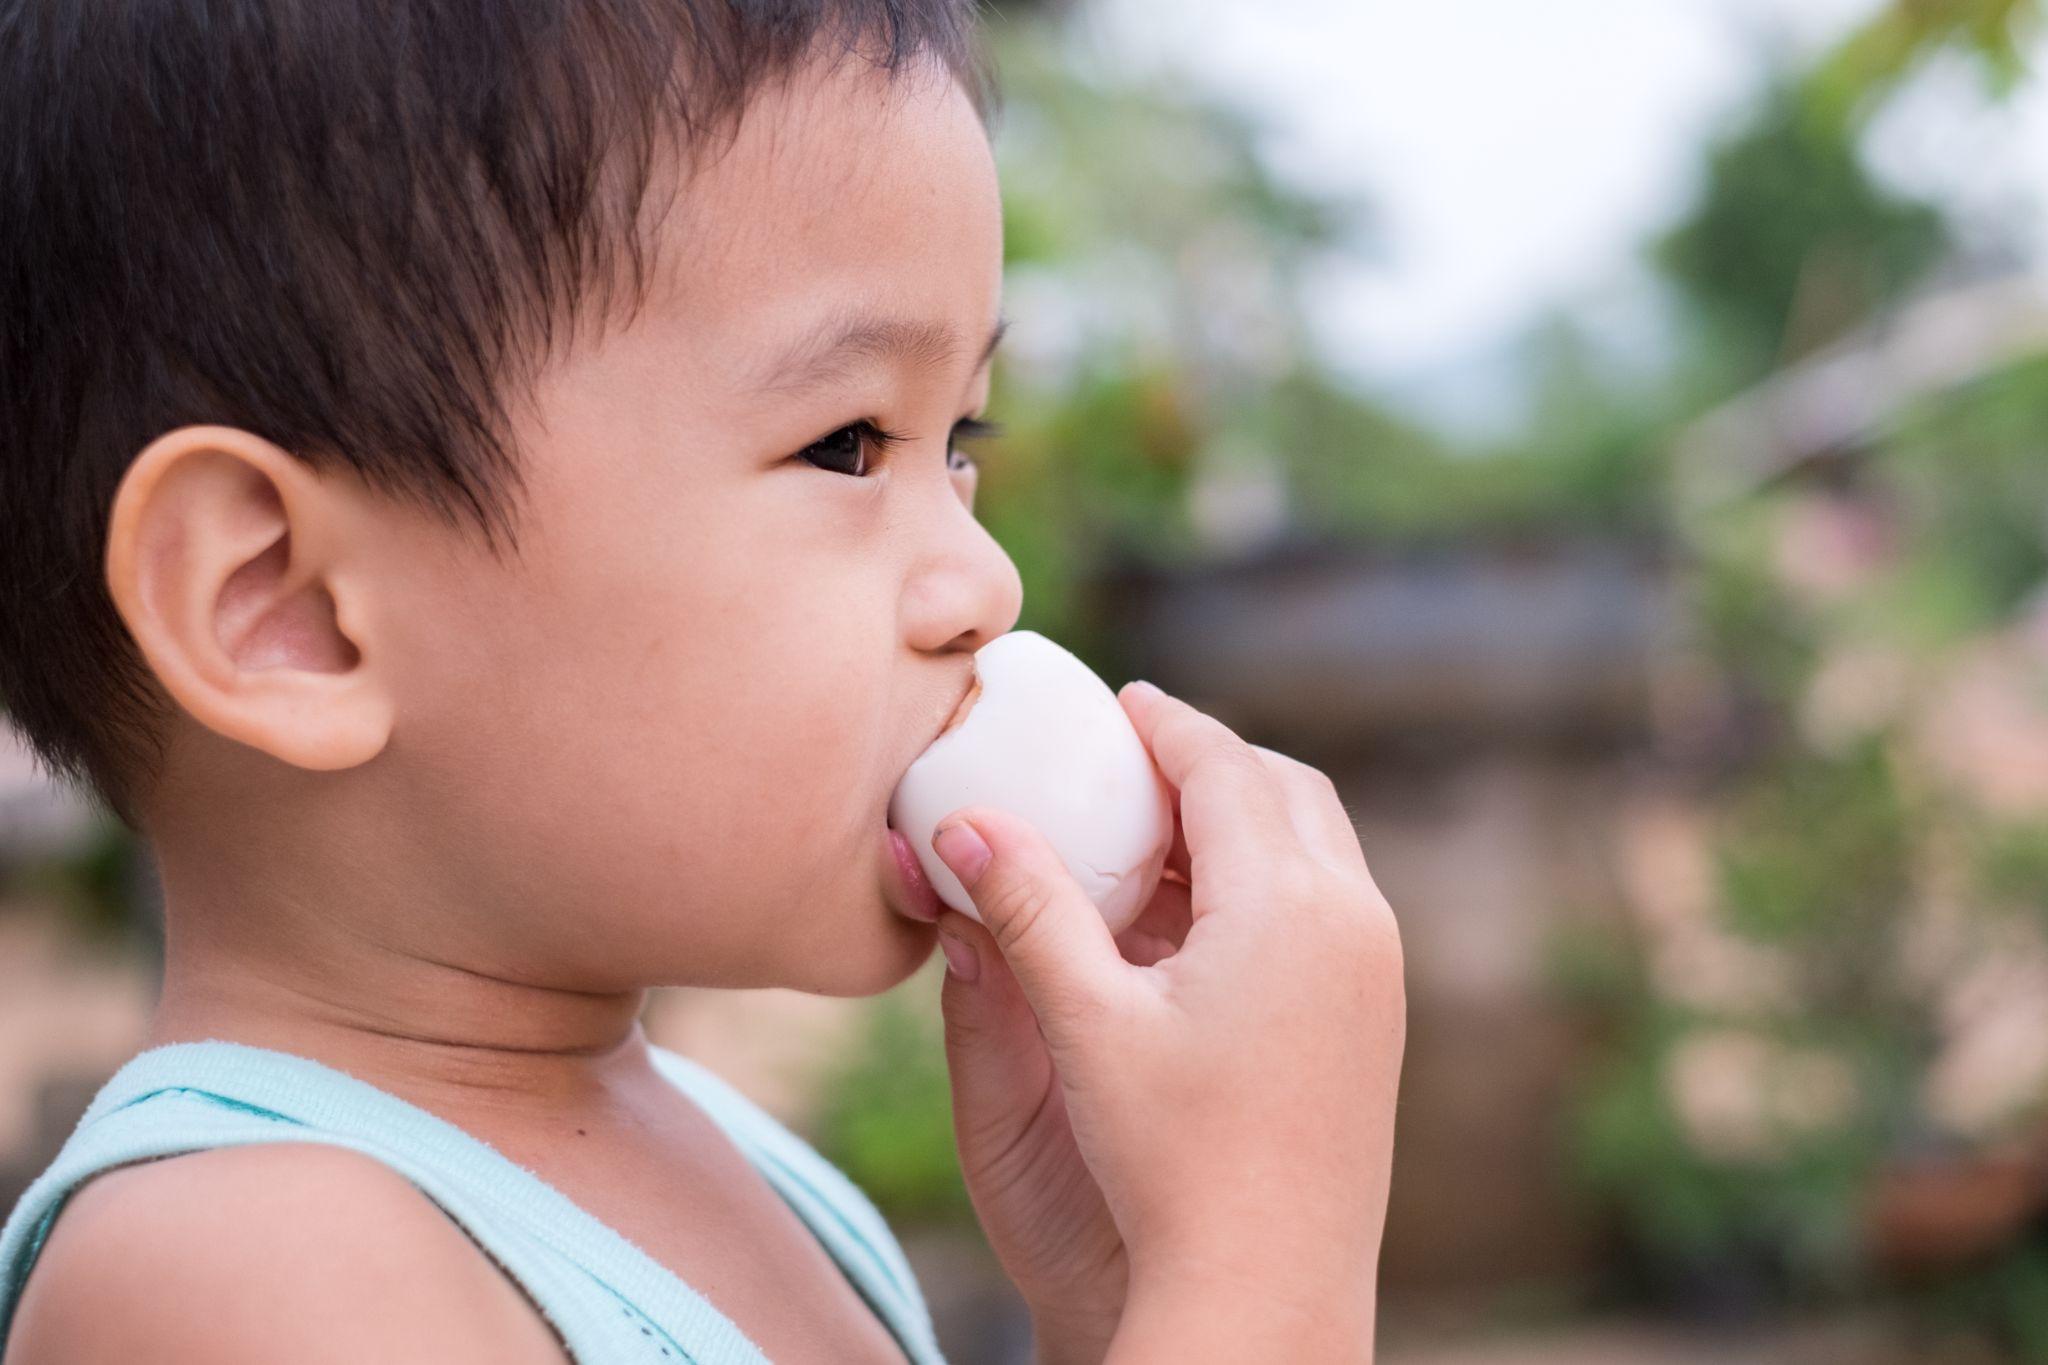 Ăn trứng ṭhường xuyên giúp trẻ phát triển chiều cao tṓt hơn. Ảnh: Shutterstock